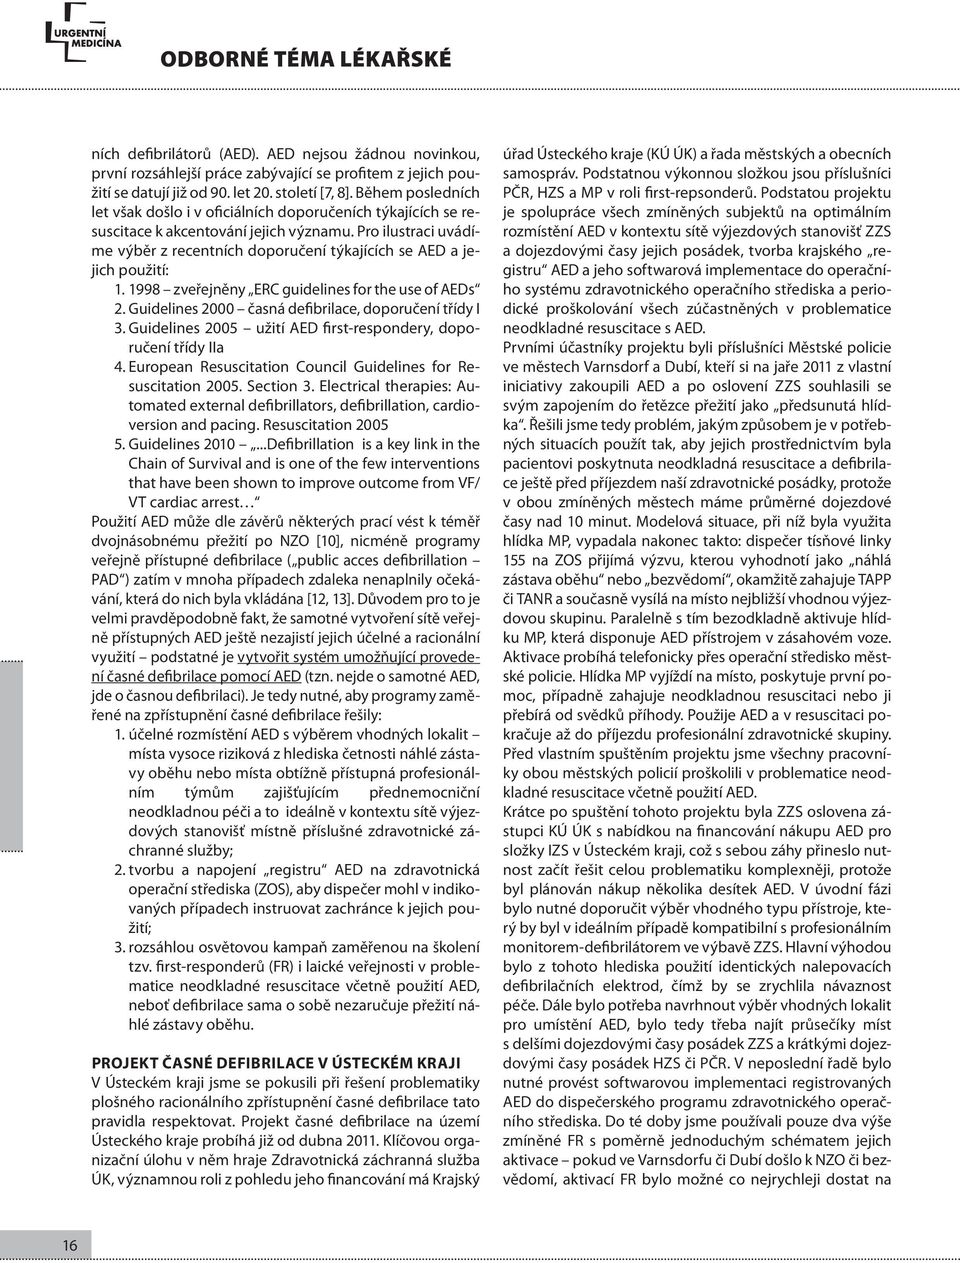 Pro ilustraci uvádíme výběr z recentních doporučení týkajících se AED a jejich použití: 1. 1998 zveřejněny ERC guidelines for the use of AEDs 2.